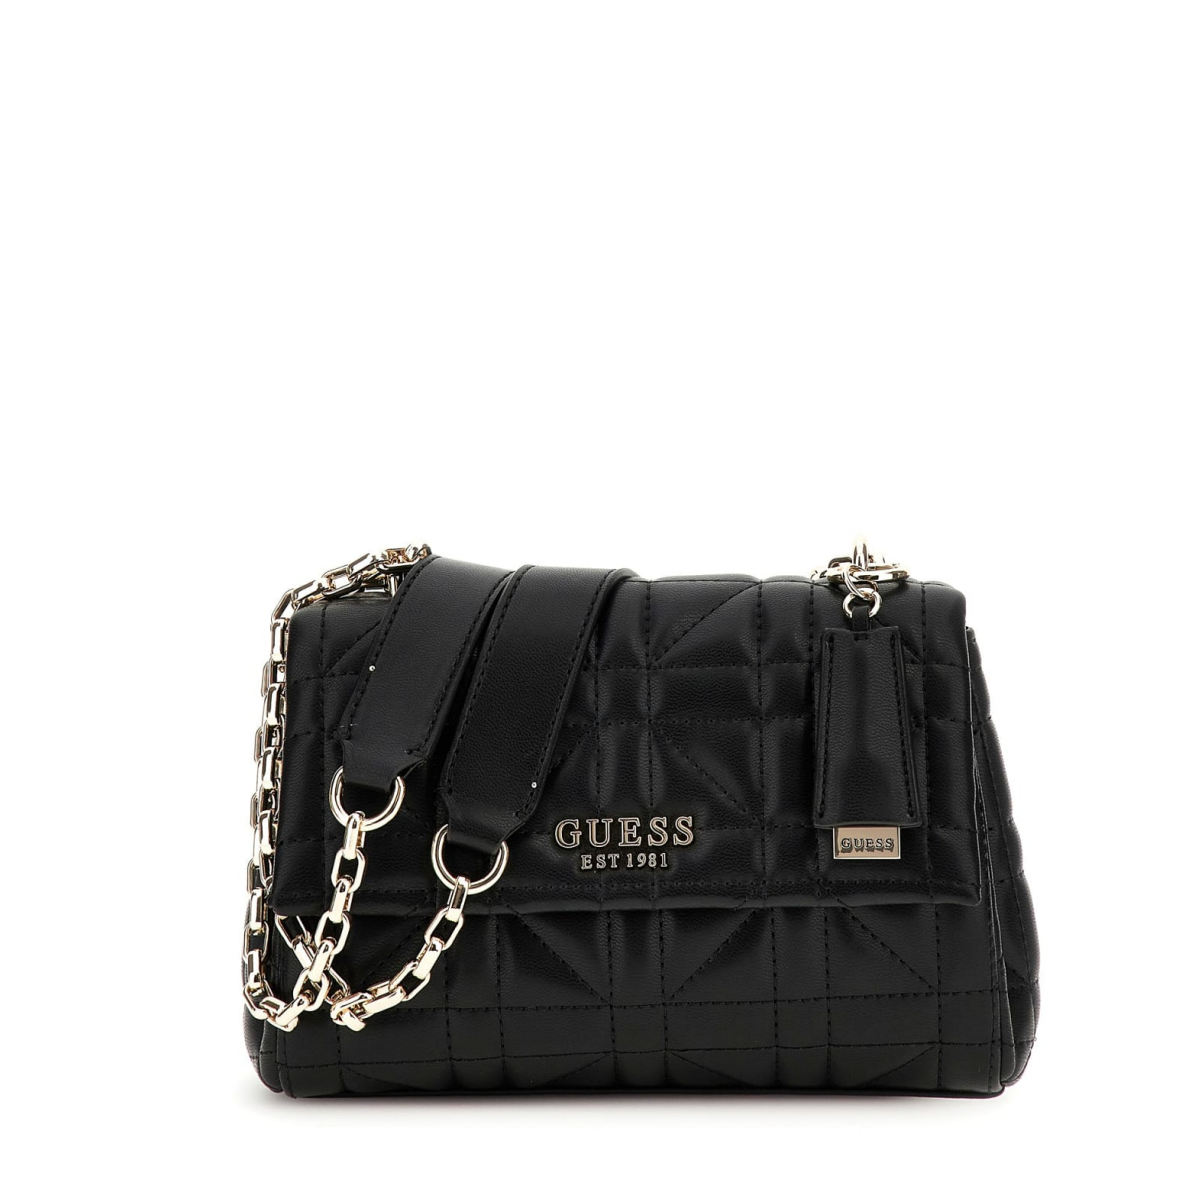 Guess dámská módní kabelka - černá - One size